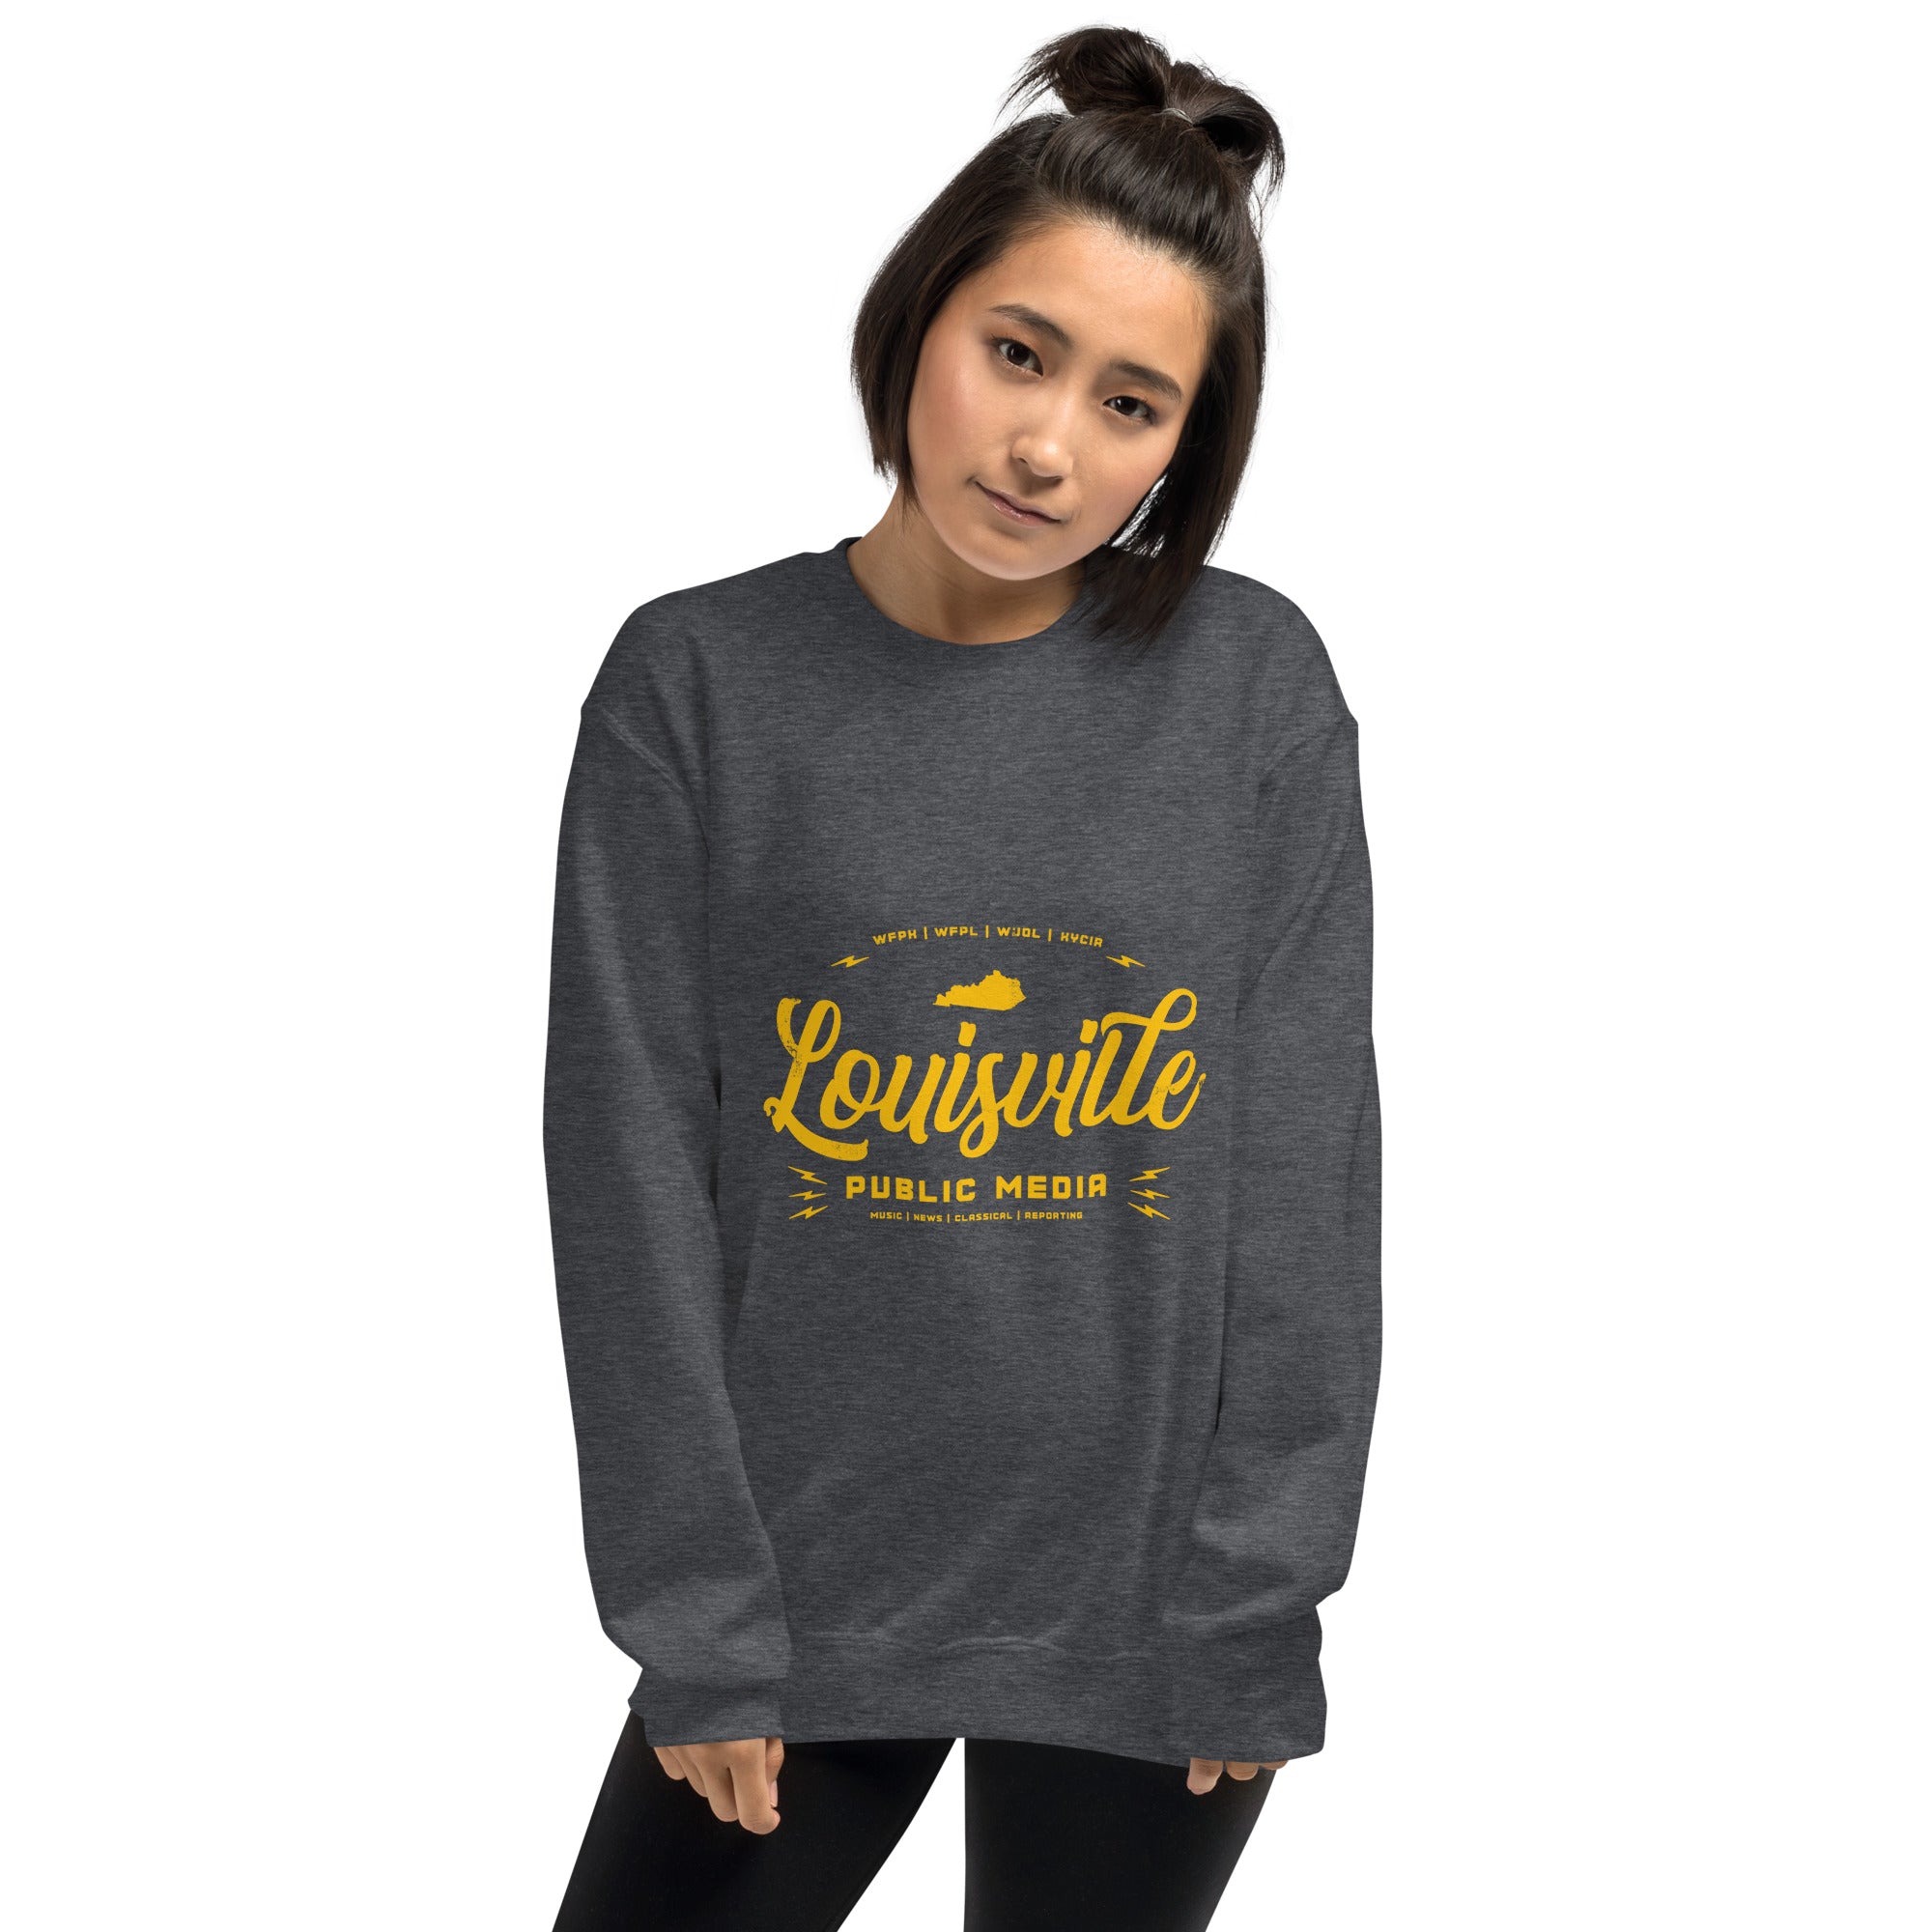 louisville sweatshirt women